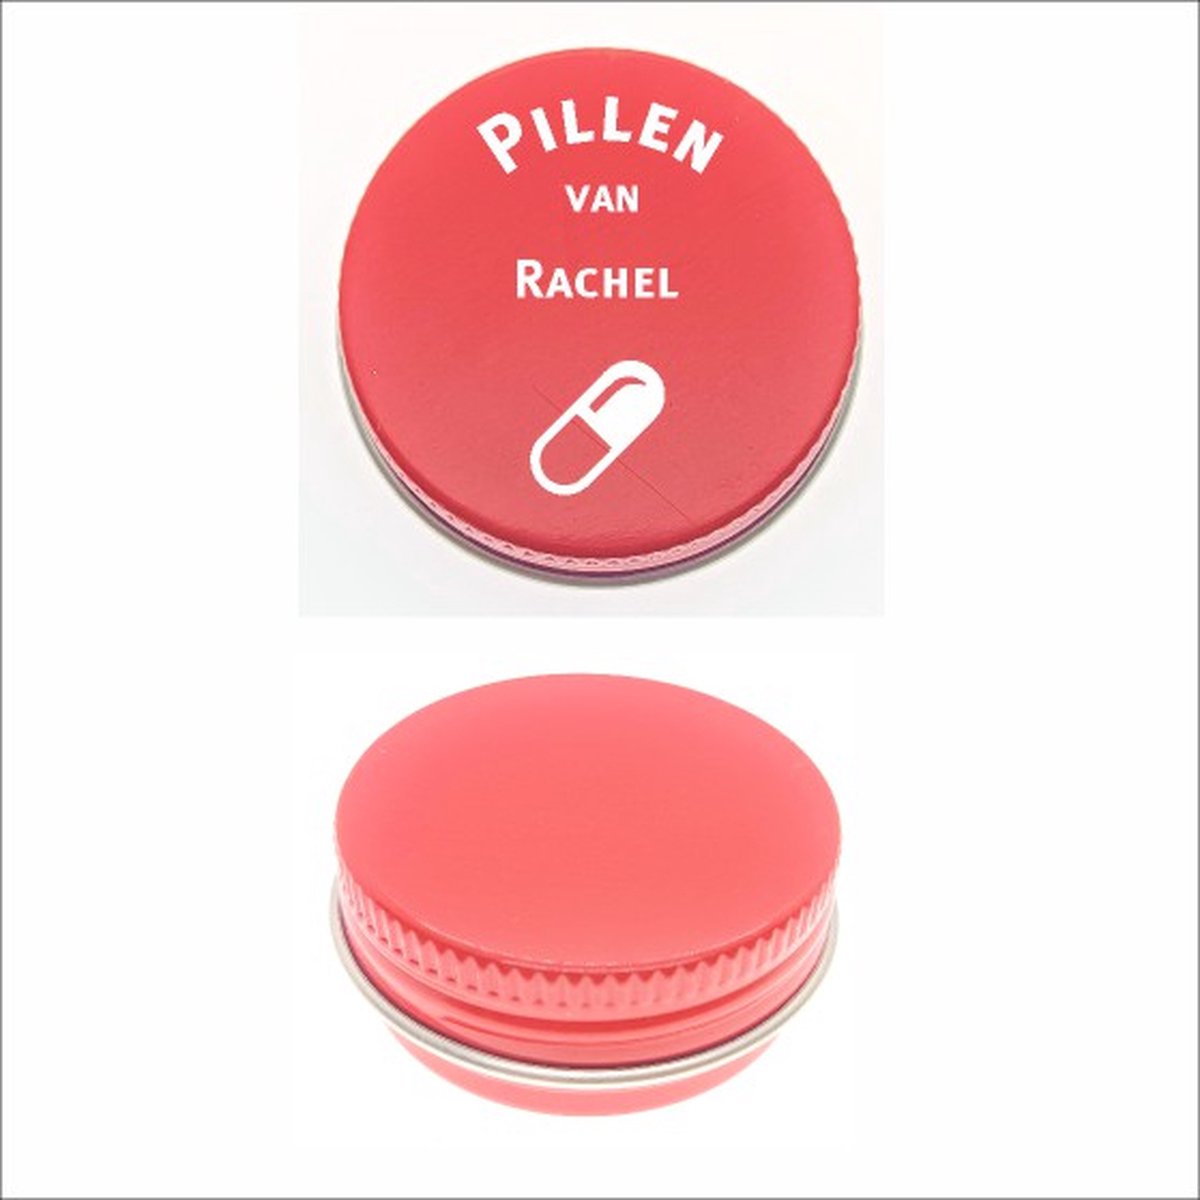 Pillen Blikje Met Naam Gravering - Rachel